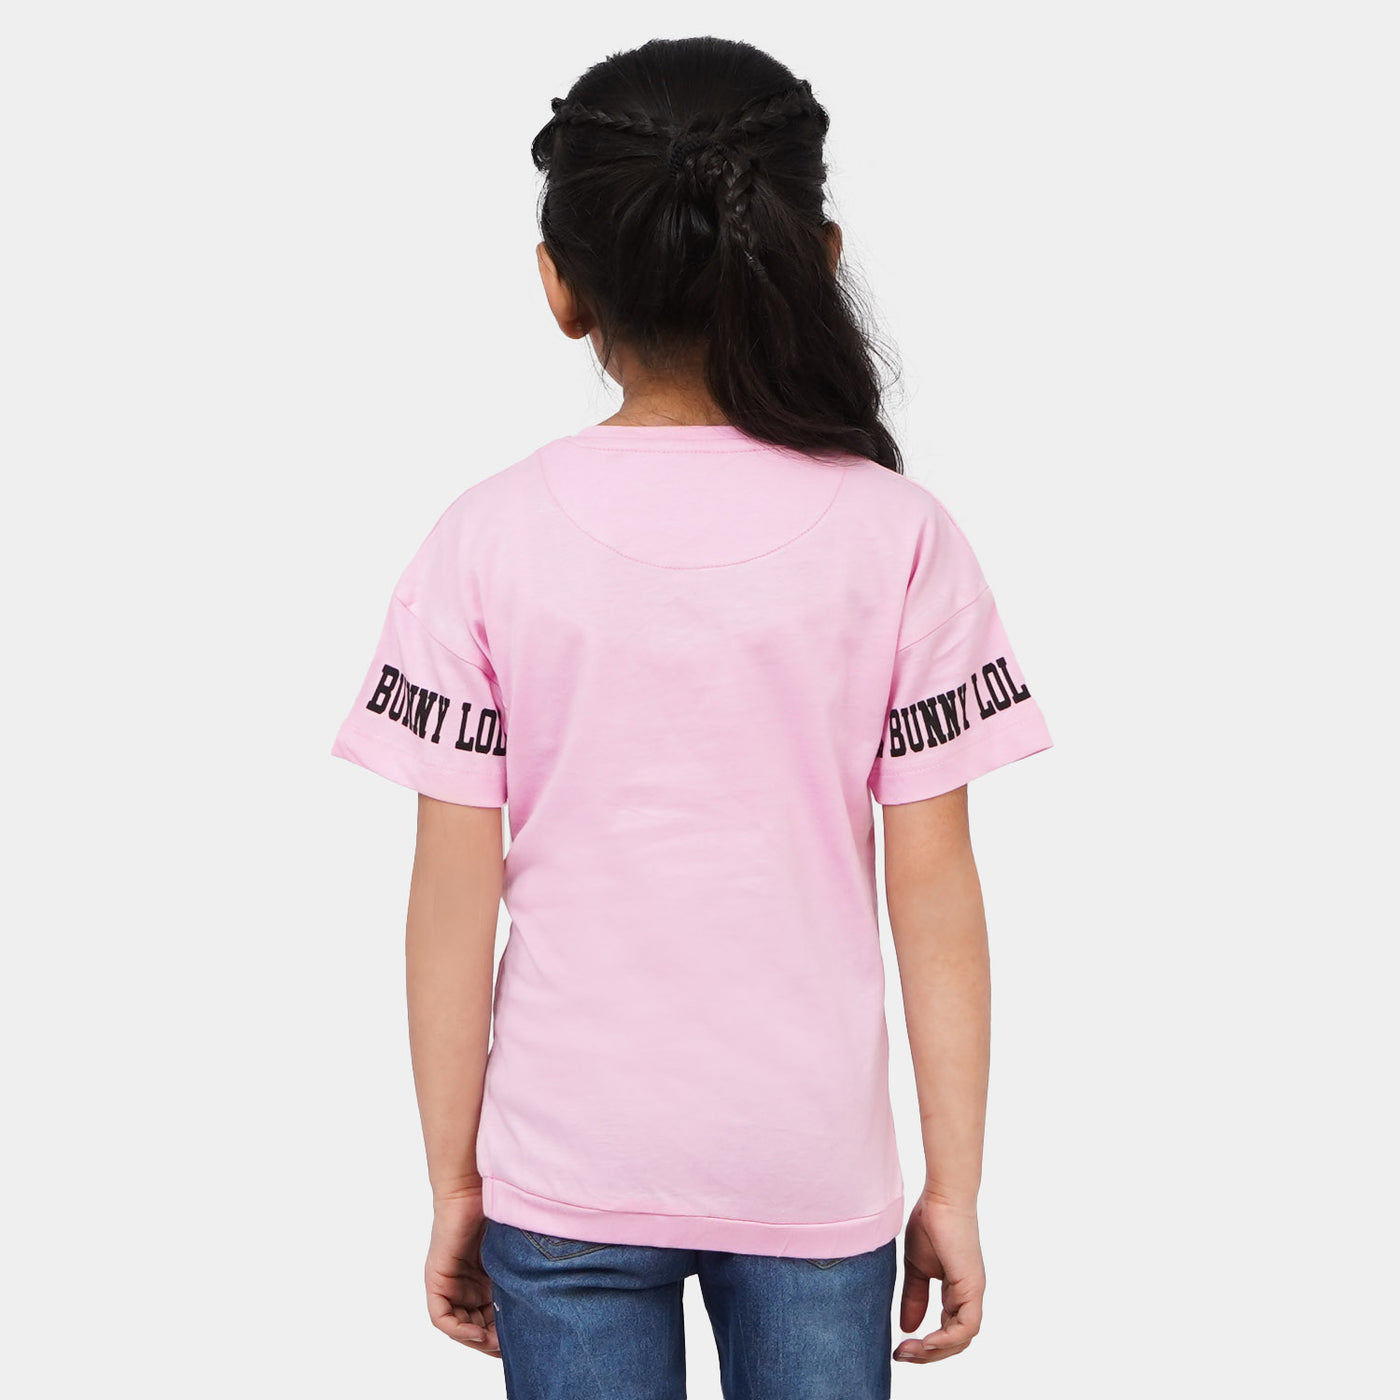 Girls Cotton Character T-Shirt  - Light Pink